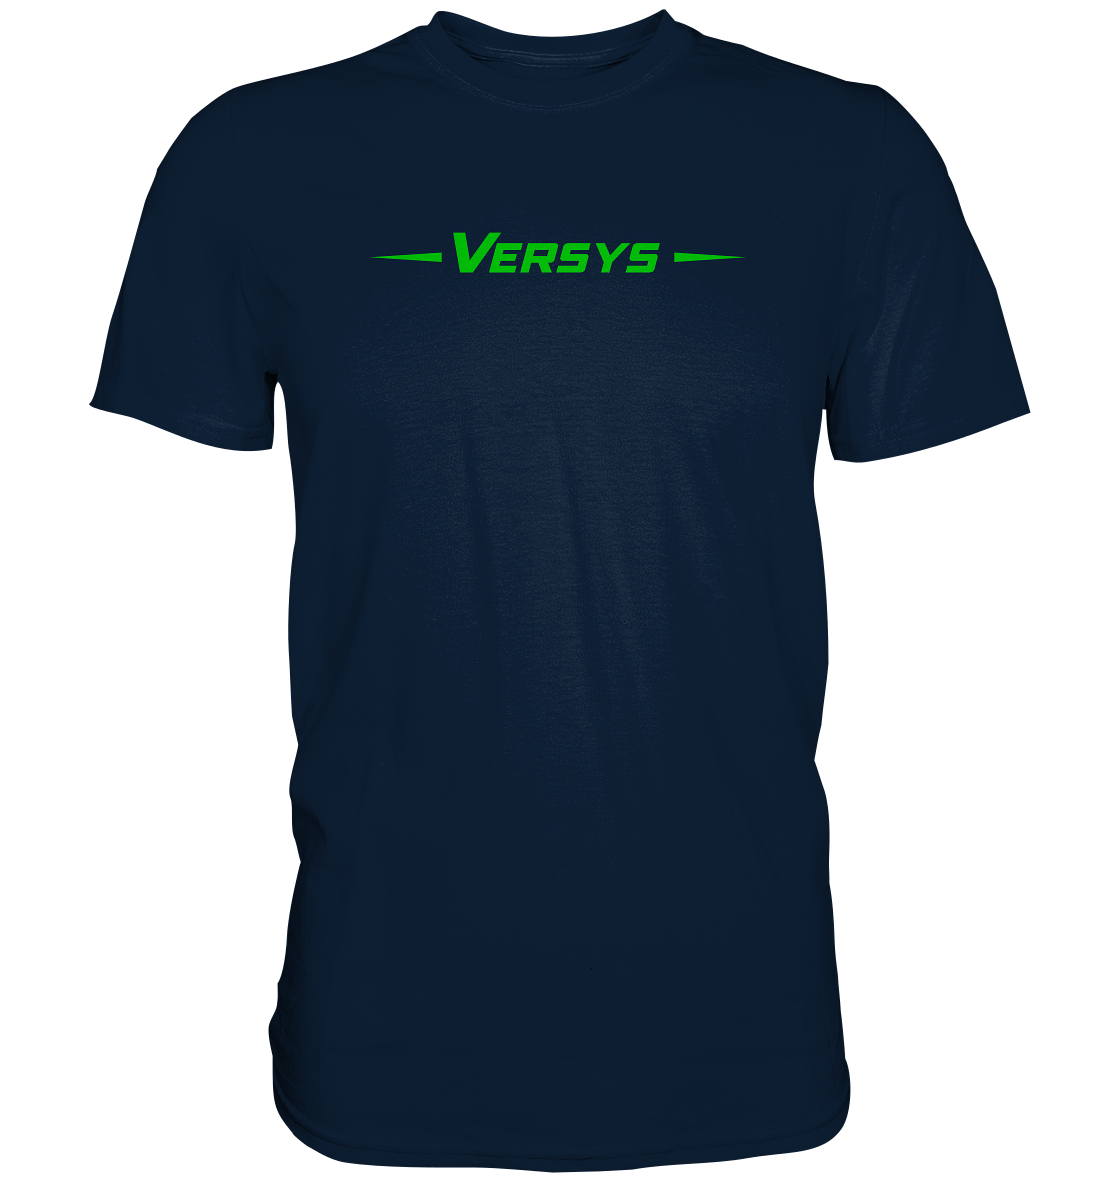 Versys - Premium unisex Shirt - helle und dunkle shirts